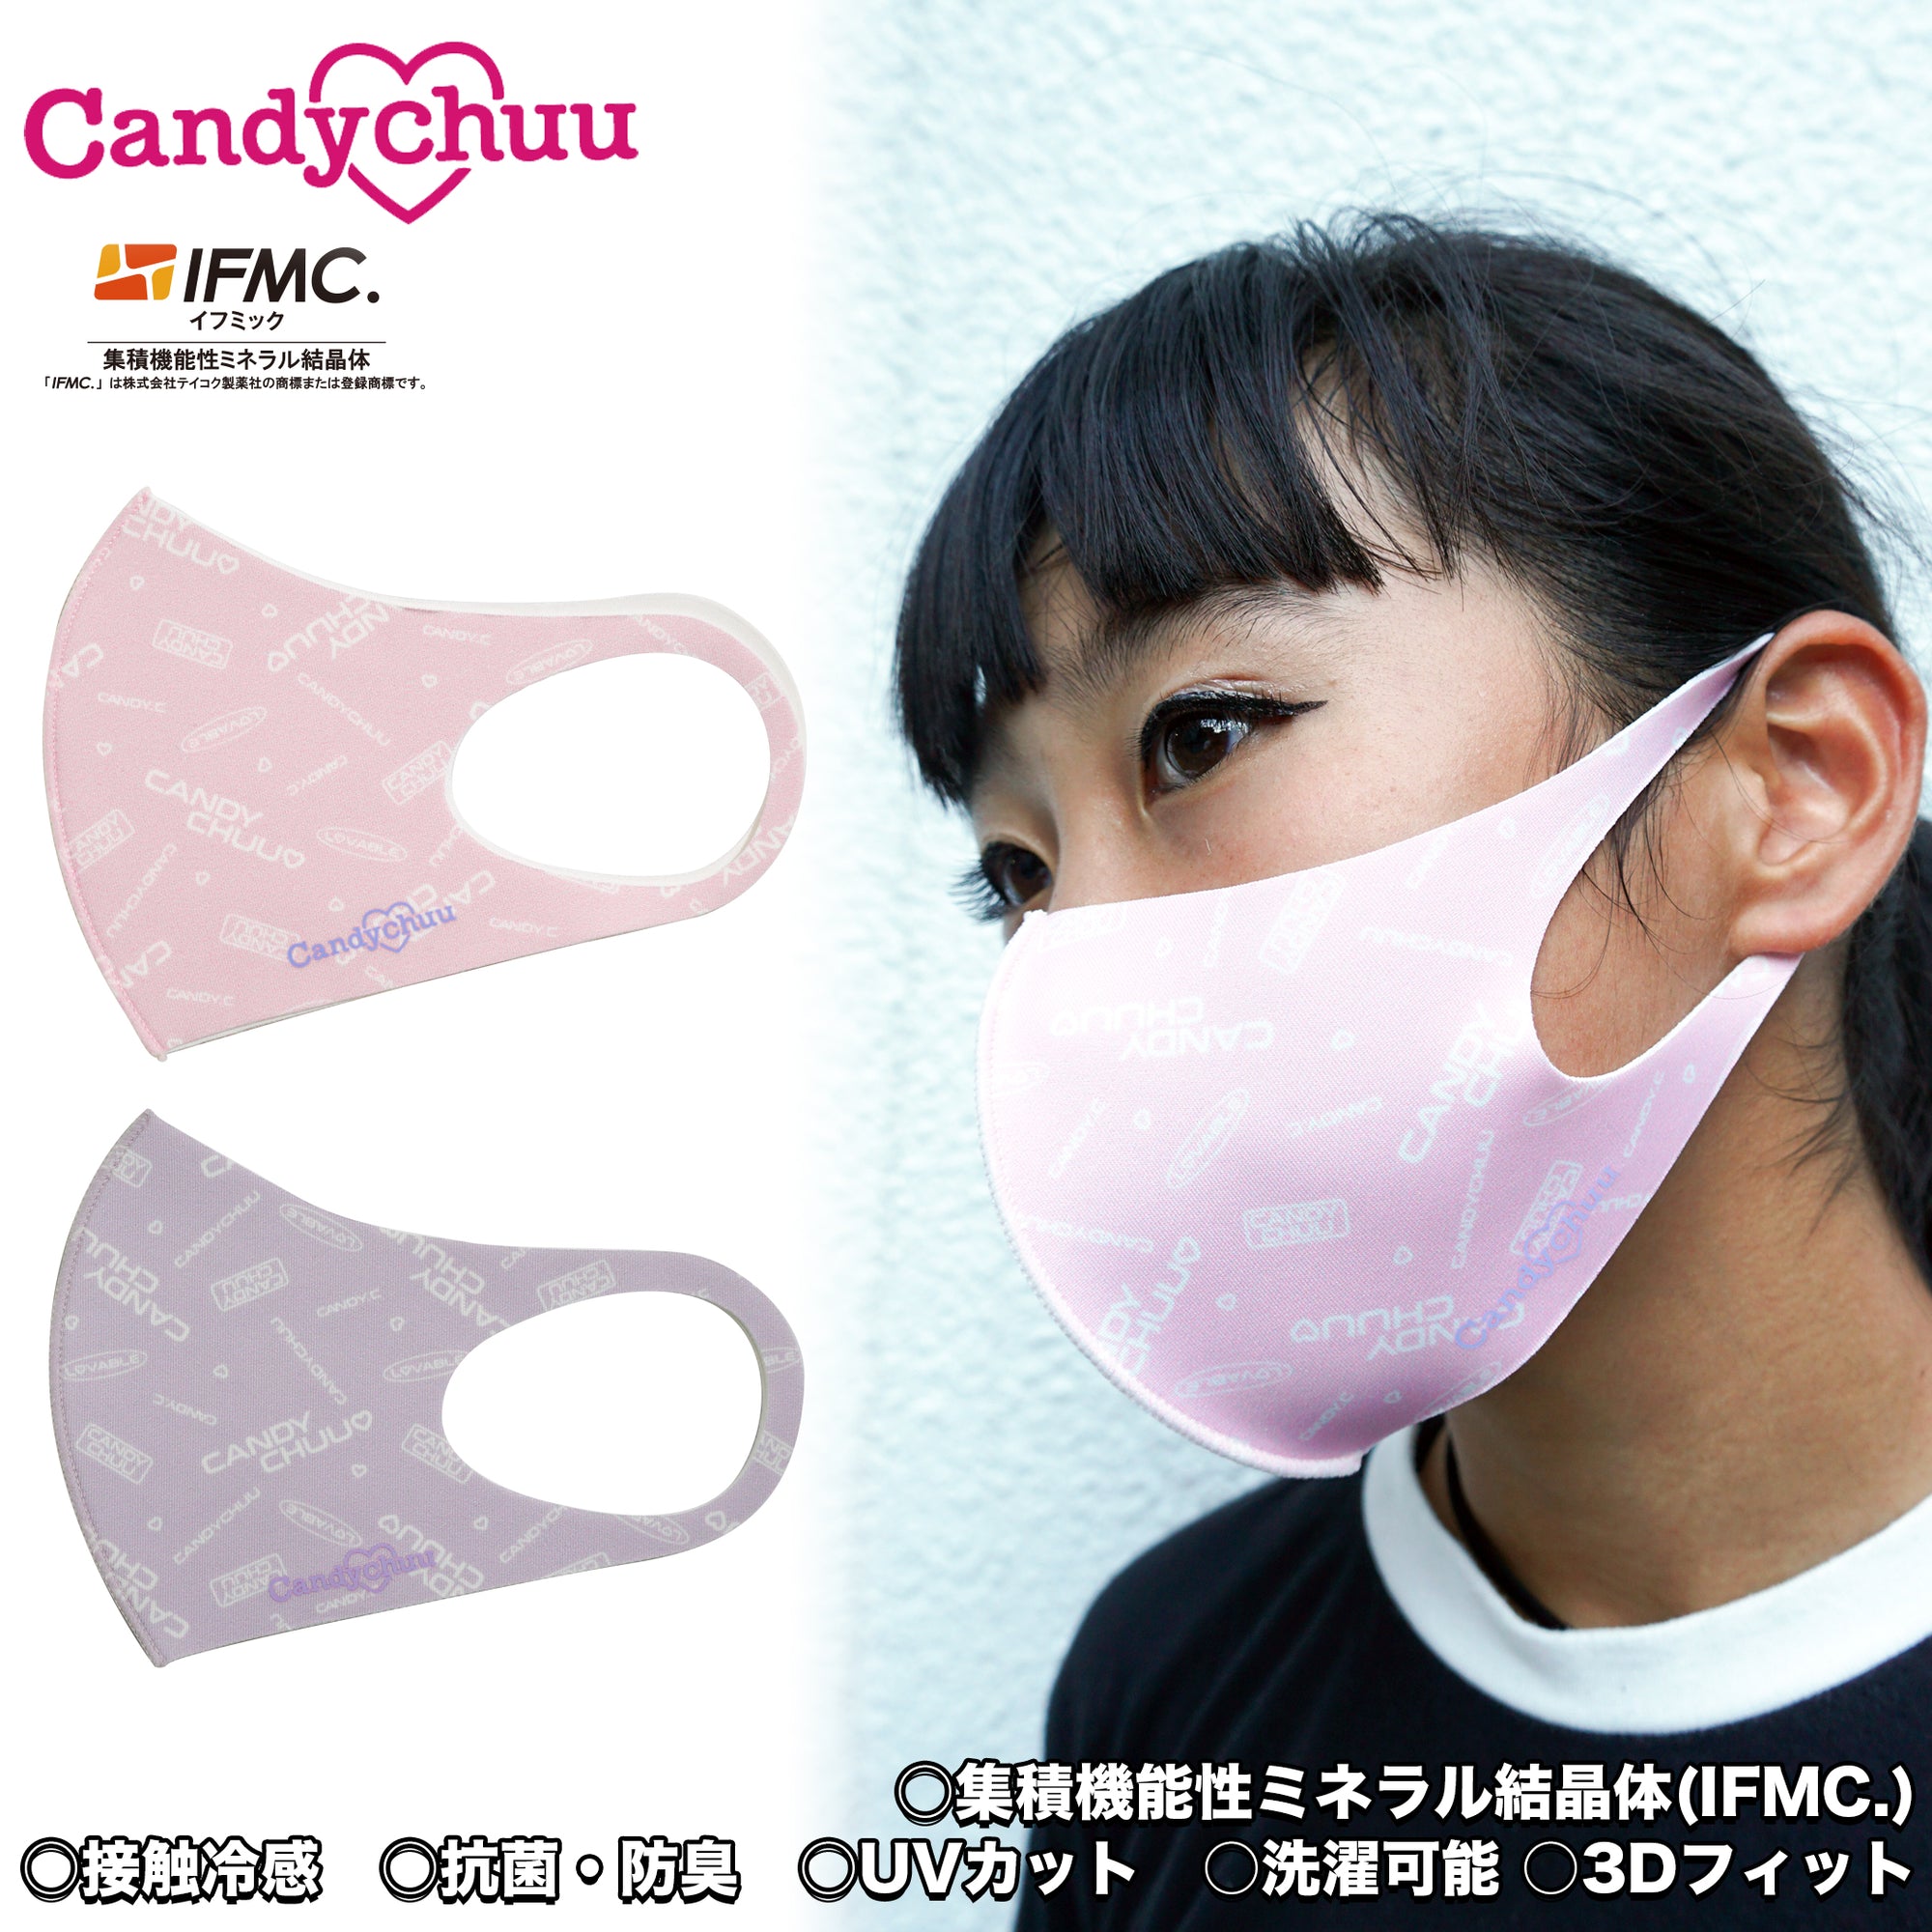 (40%オフ! セール商品)Candychuu ロゴ マスク (200584)